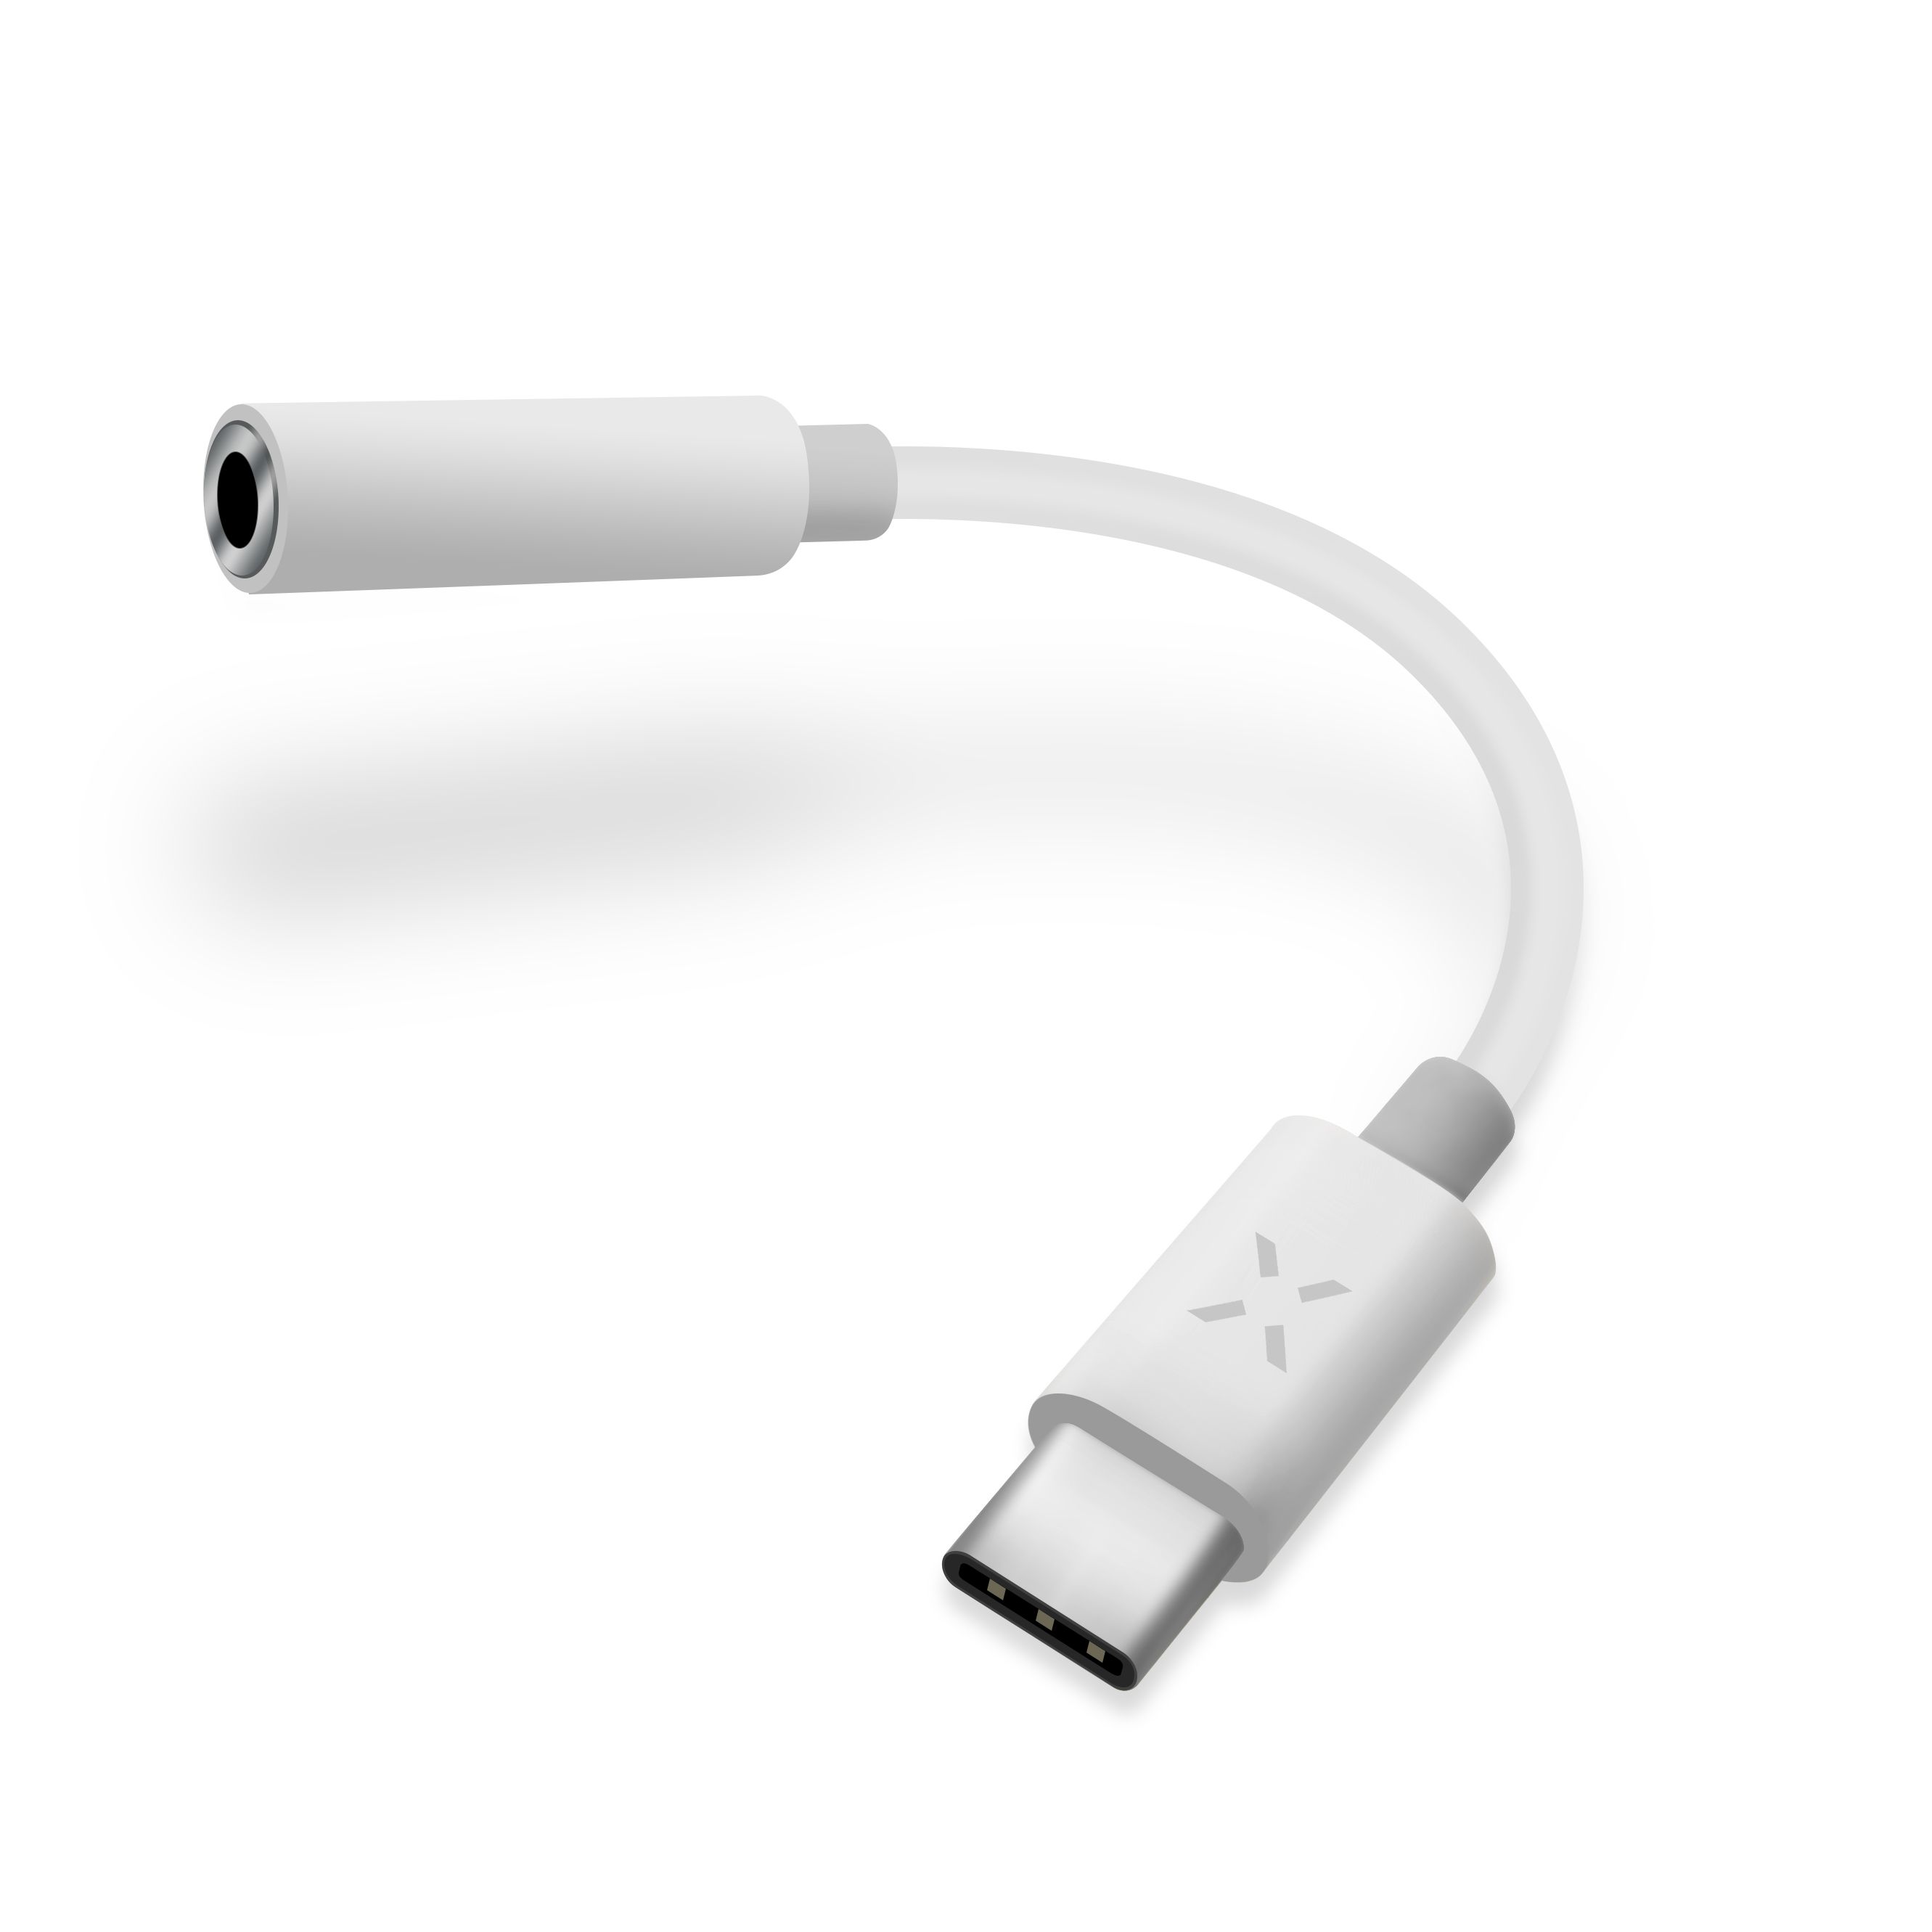 Redukce LINK pro připojení sluchátek z USB-C na 3,5mm jack s DAC chipem, bílá